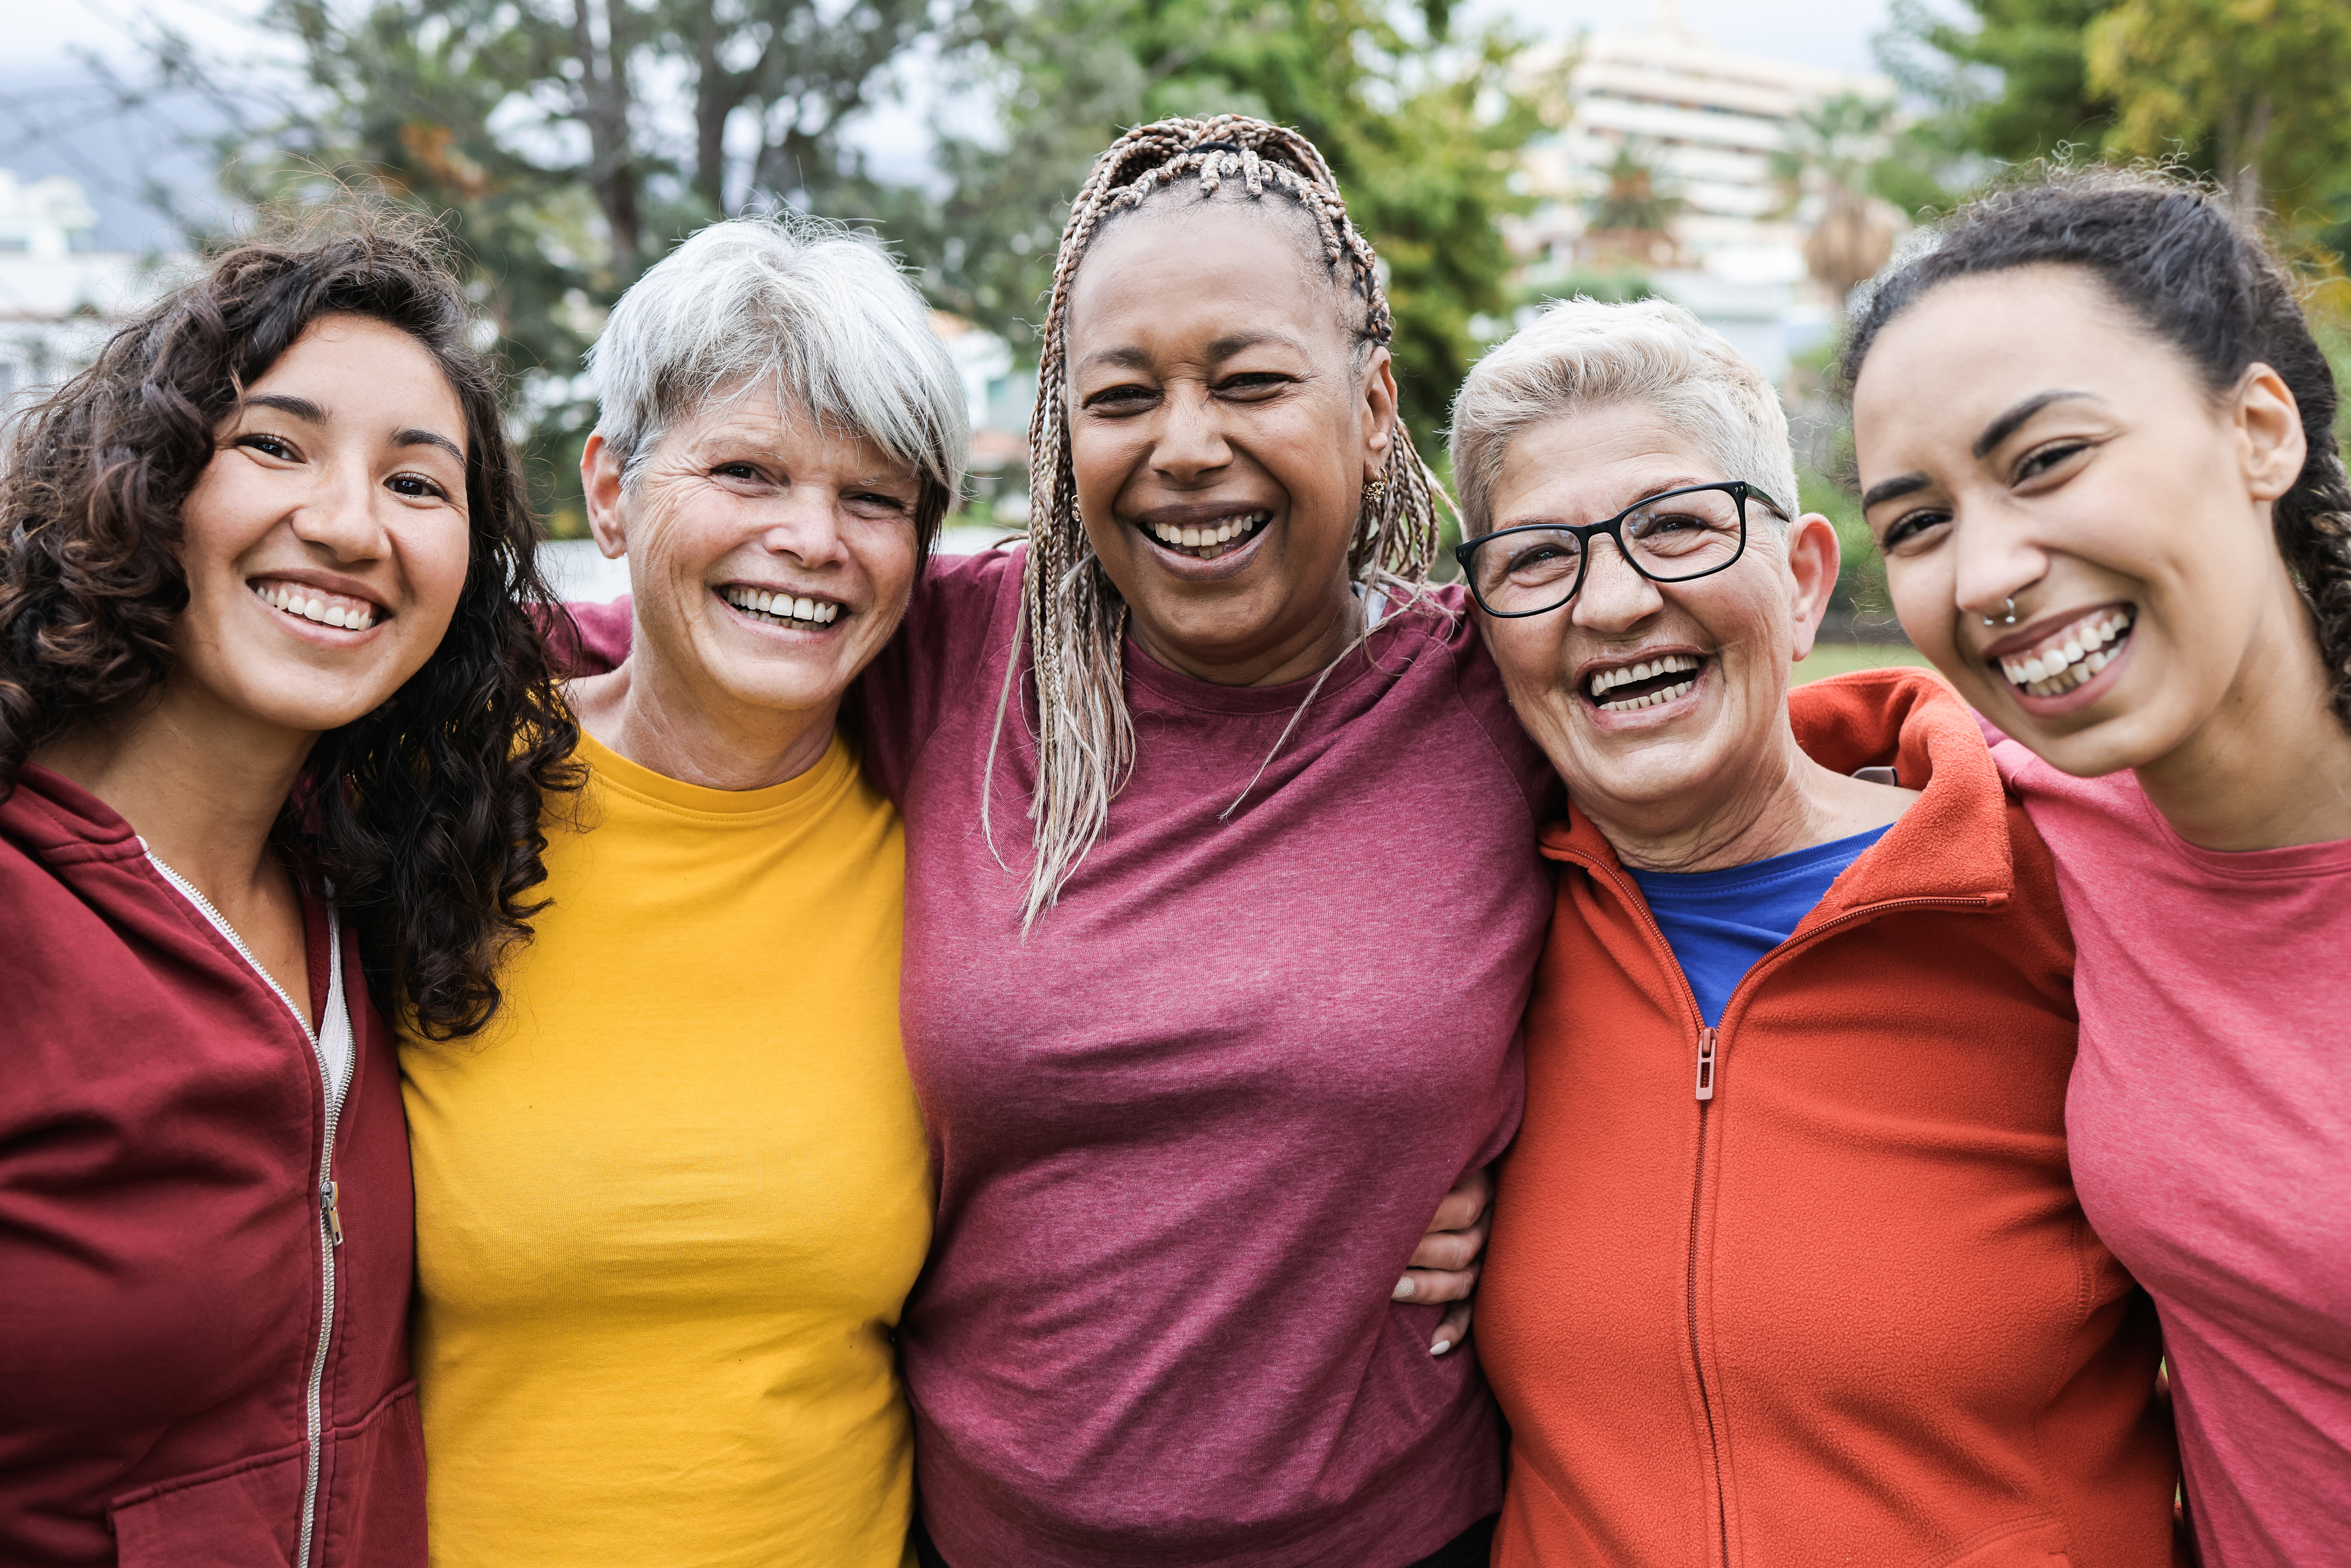 英國熟齡女性共居社區 — 打造獨立自主且不孤單的晚年活力生活